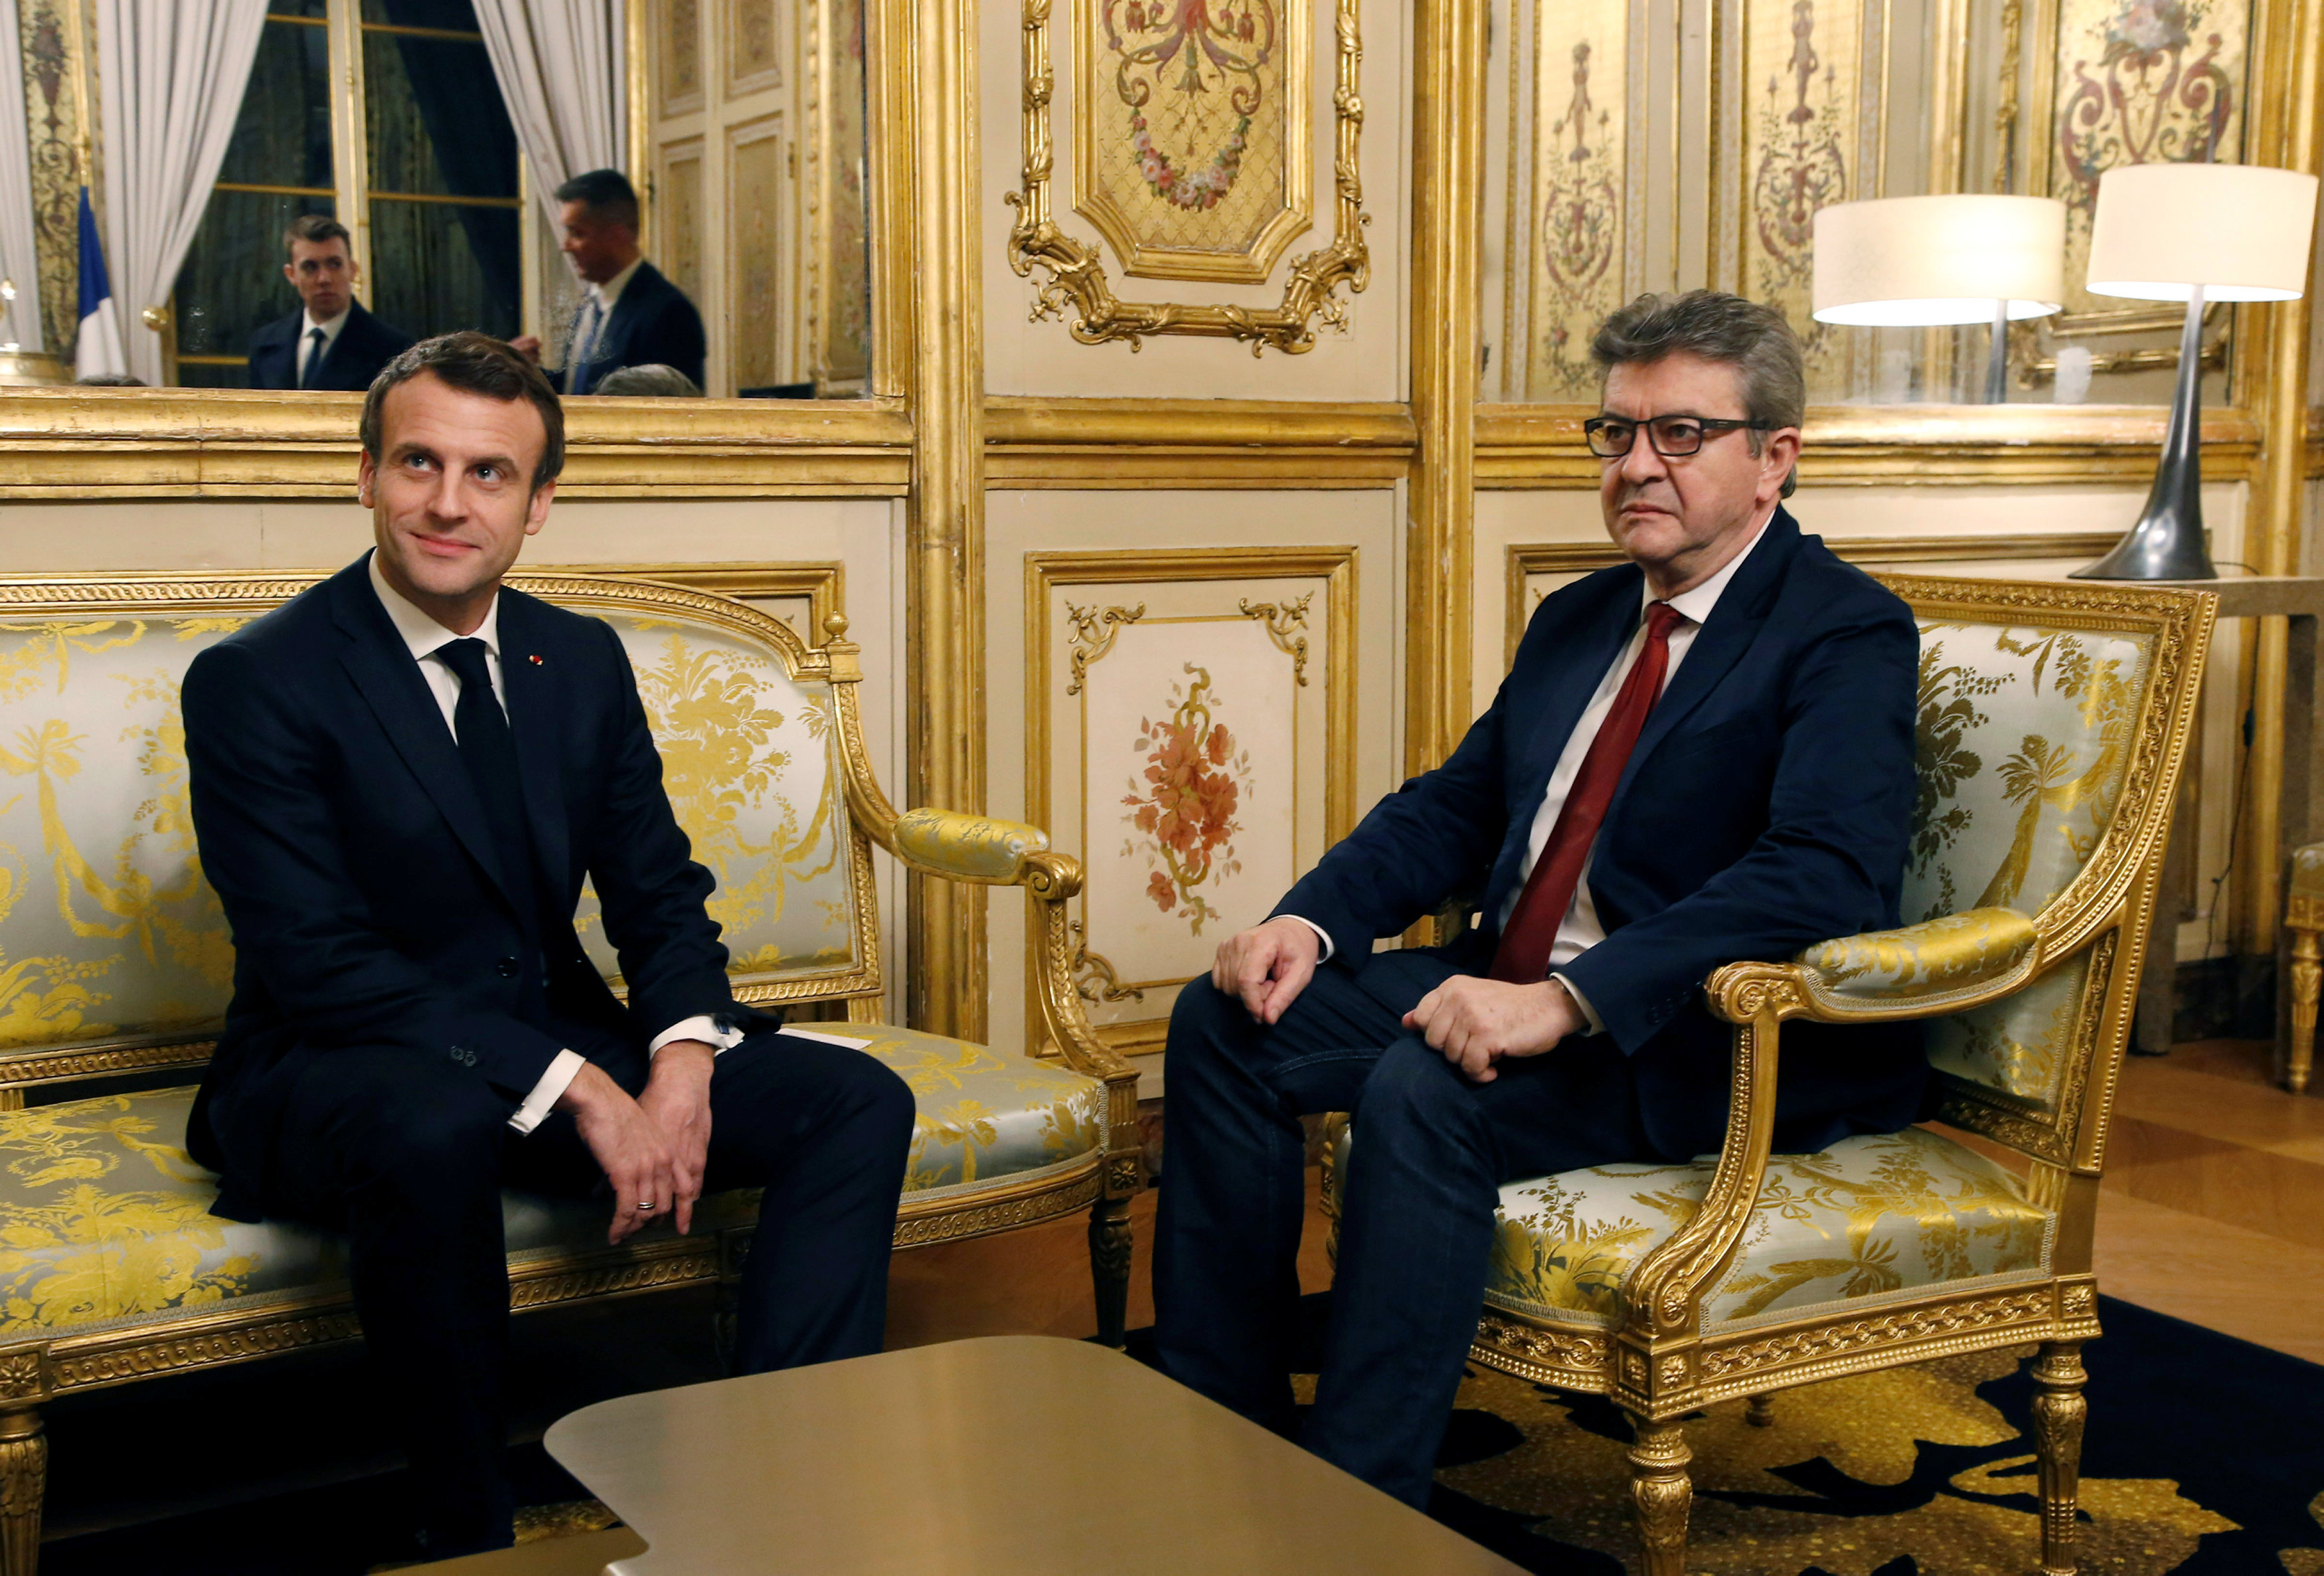 Emmanuel Macron et Jean-Luc Mélenchon au Palais de l'Elysée.  Les macronistes estiment qu'une union de la gauche permettrait de polariser et de reconquérir l'électeur réformiste et écologiste qui ne suit pas les options radicalisées